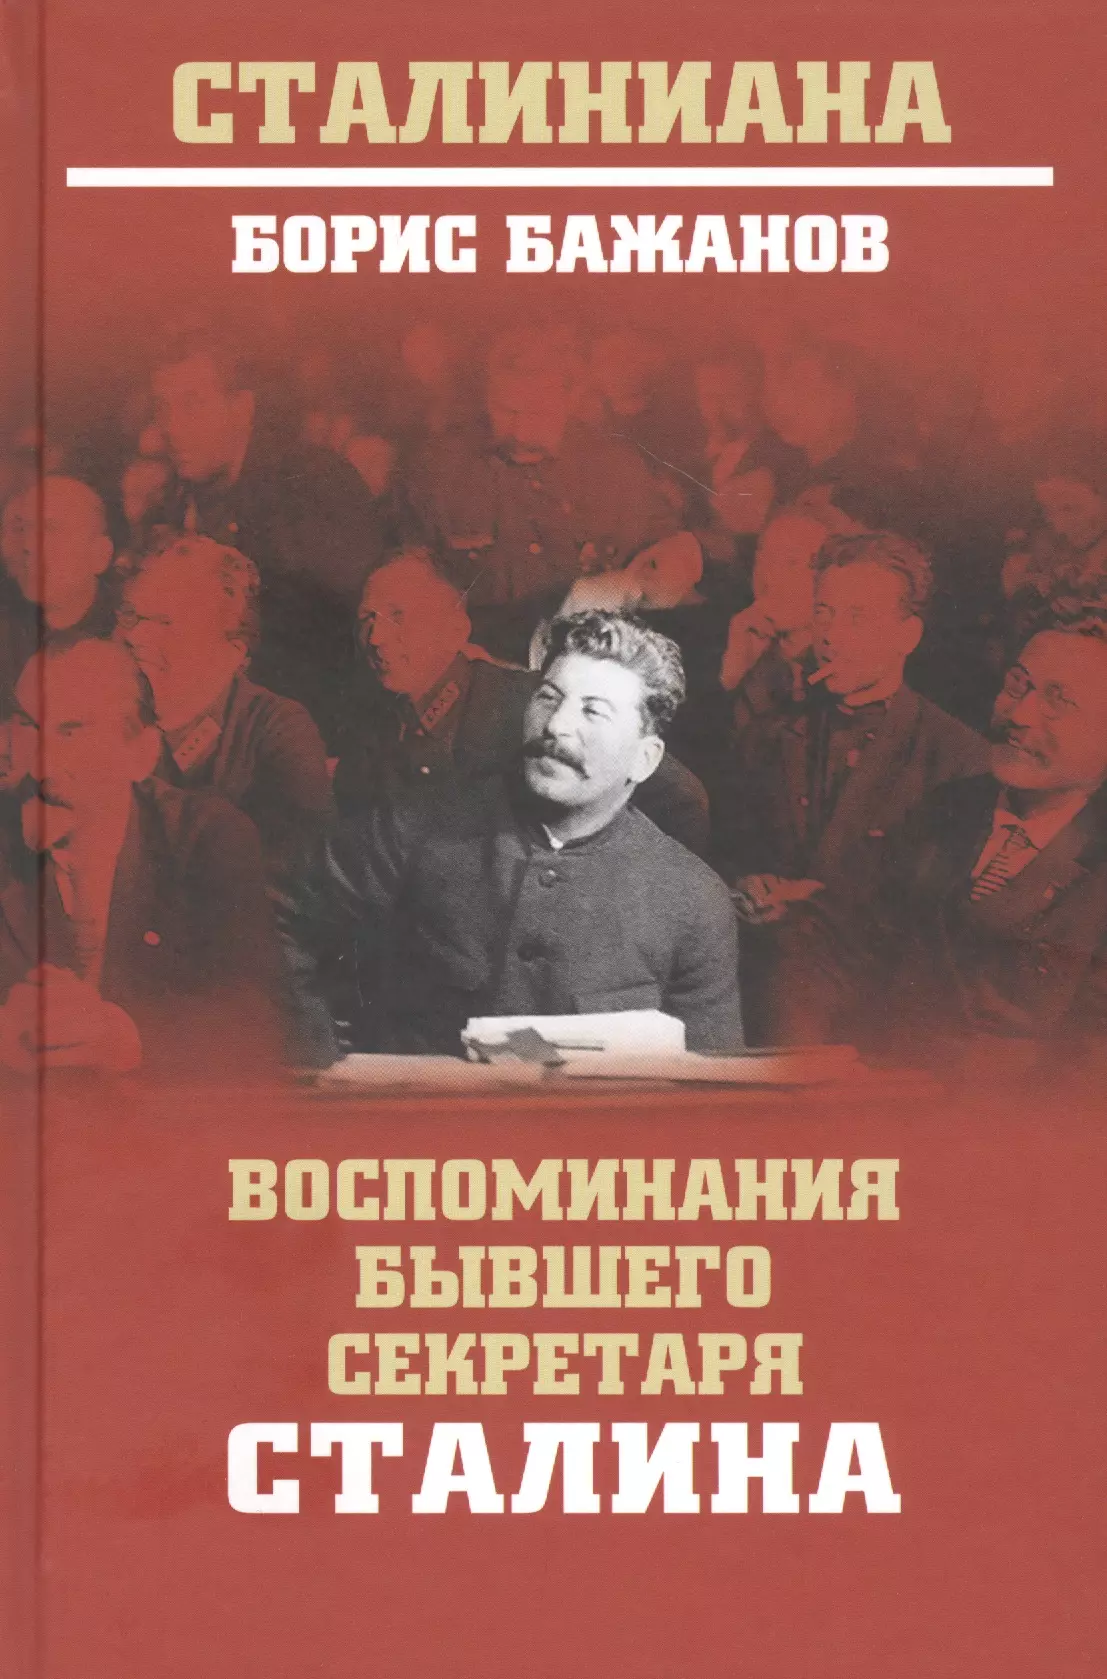 Бажанов Борис Георгиевич - Воспоминания бывшего секретаря Сталина